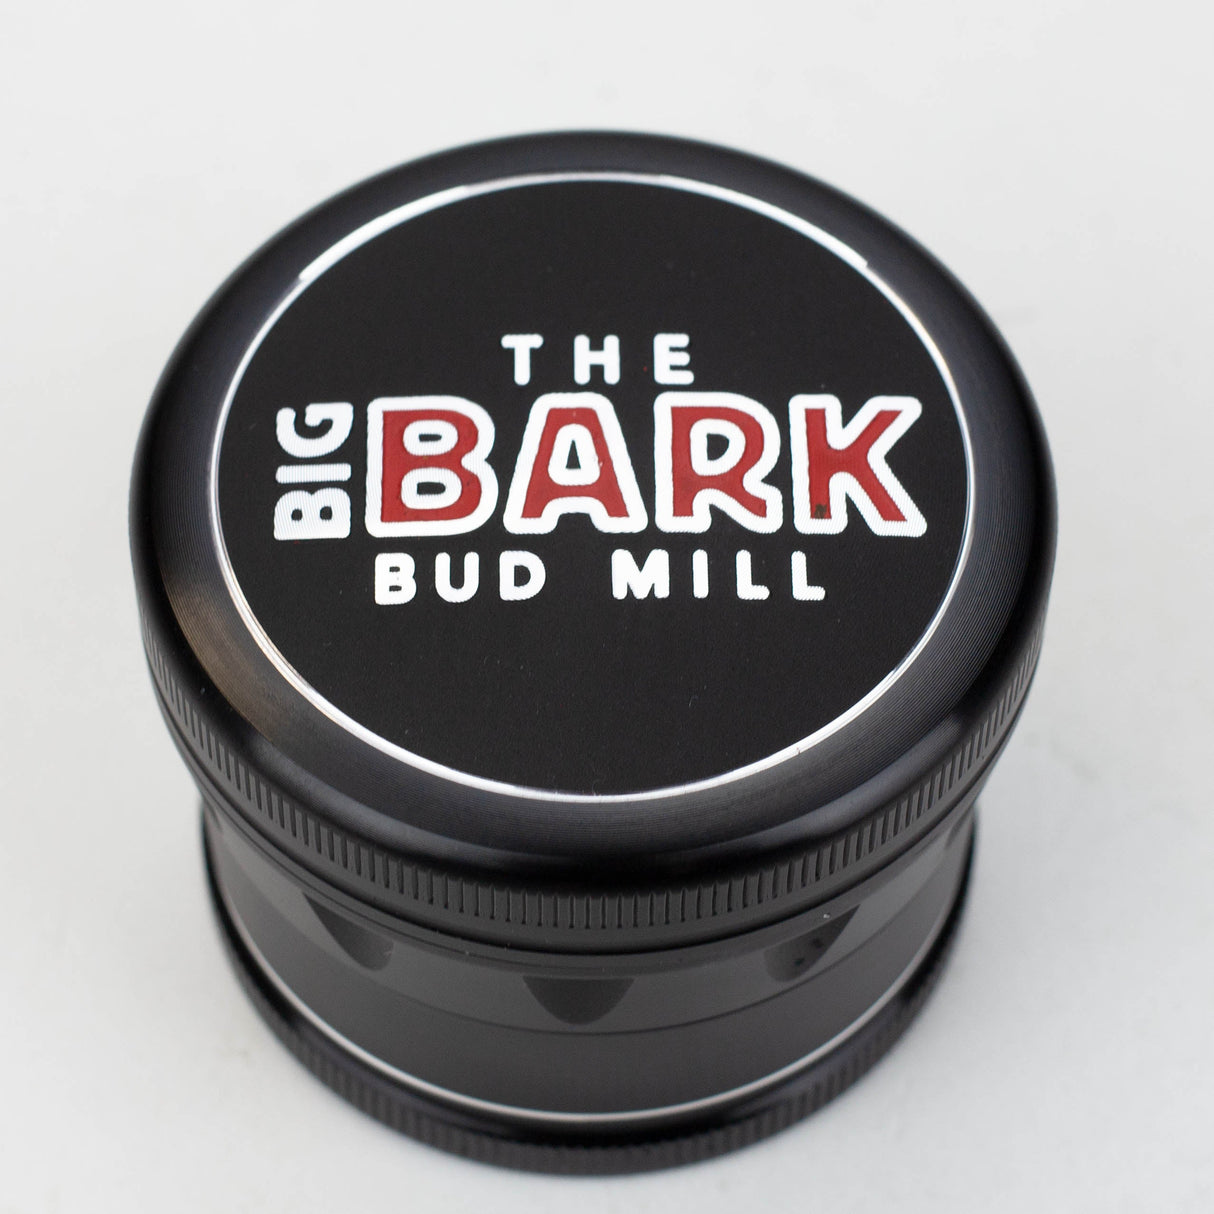 The BIGBARK Bud Mill